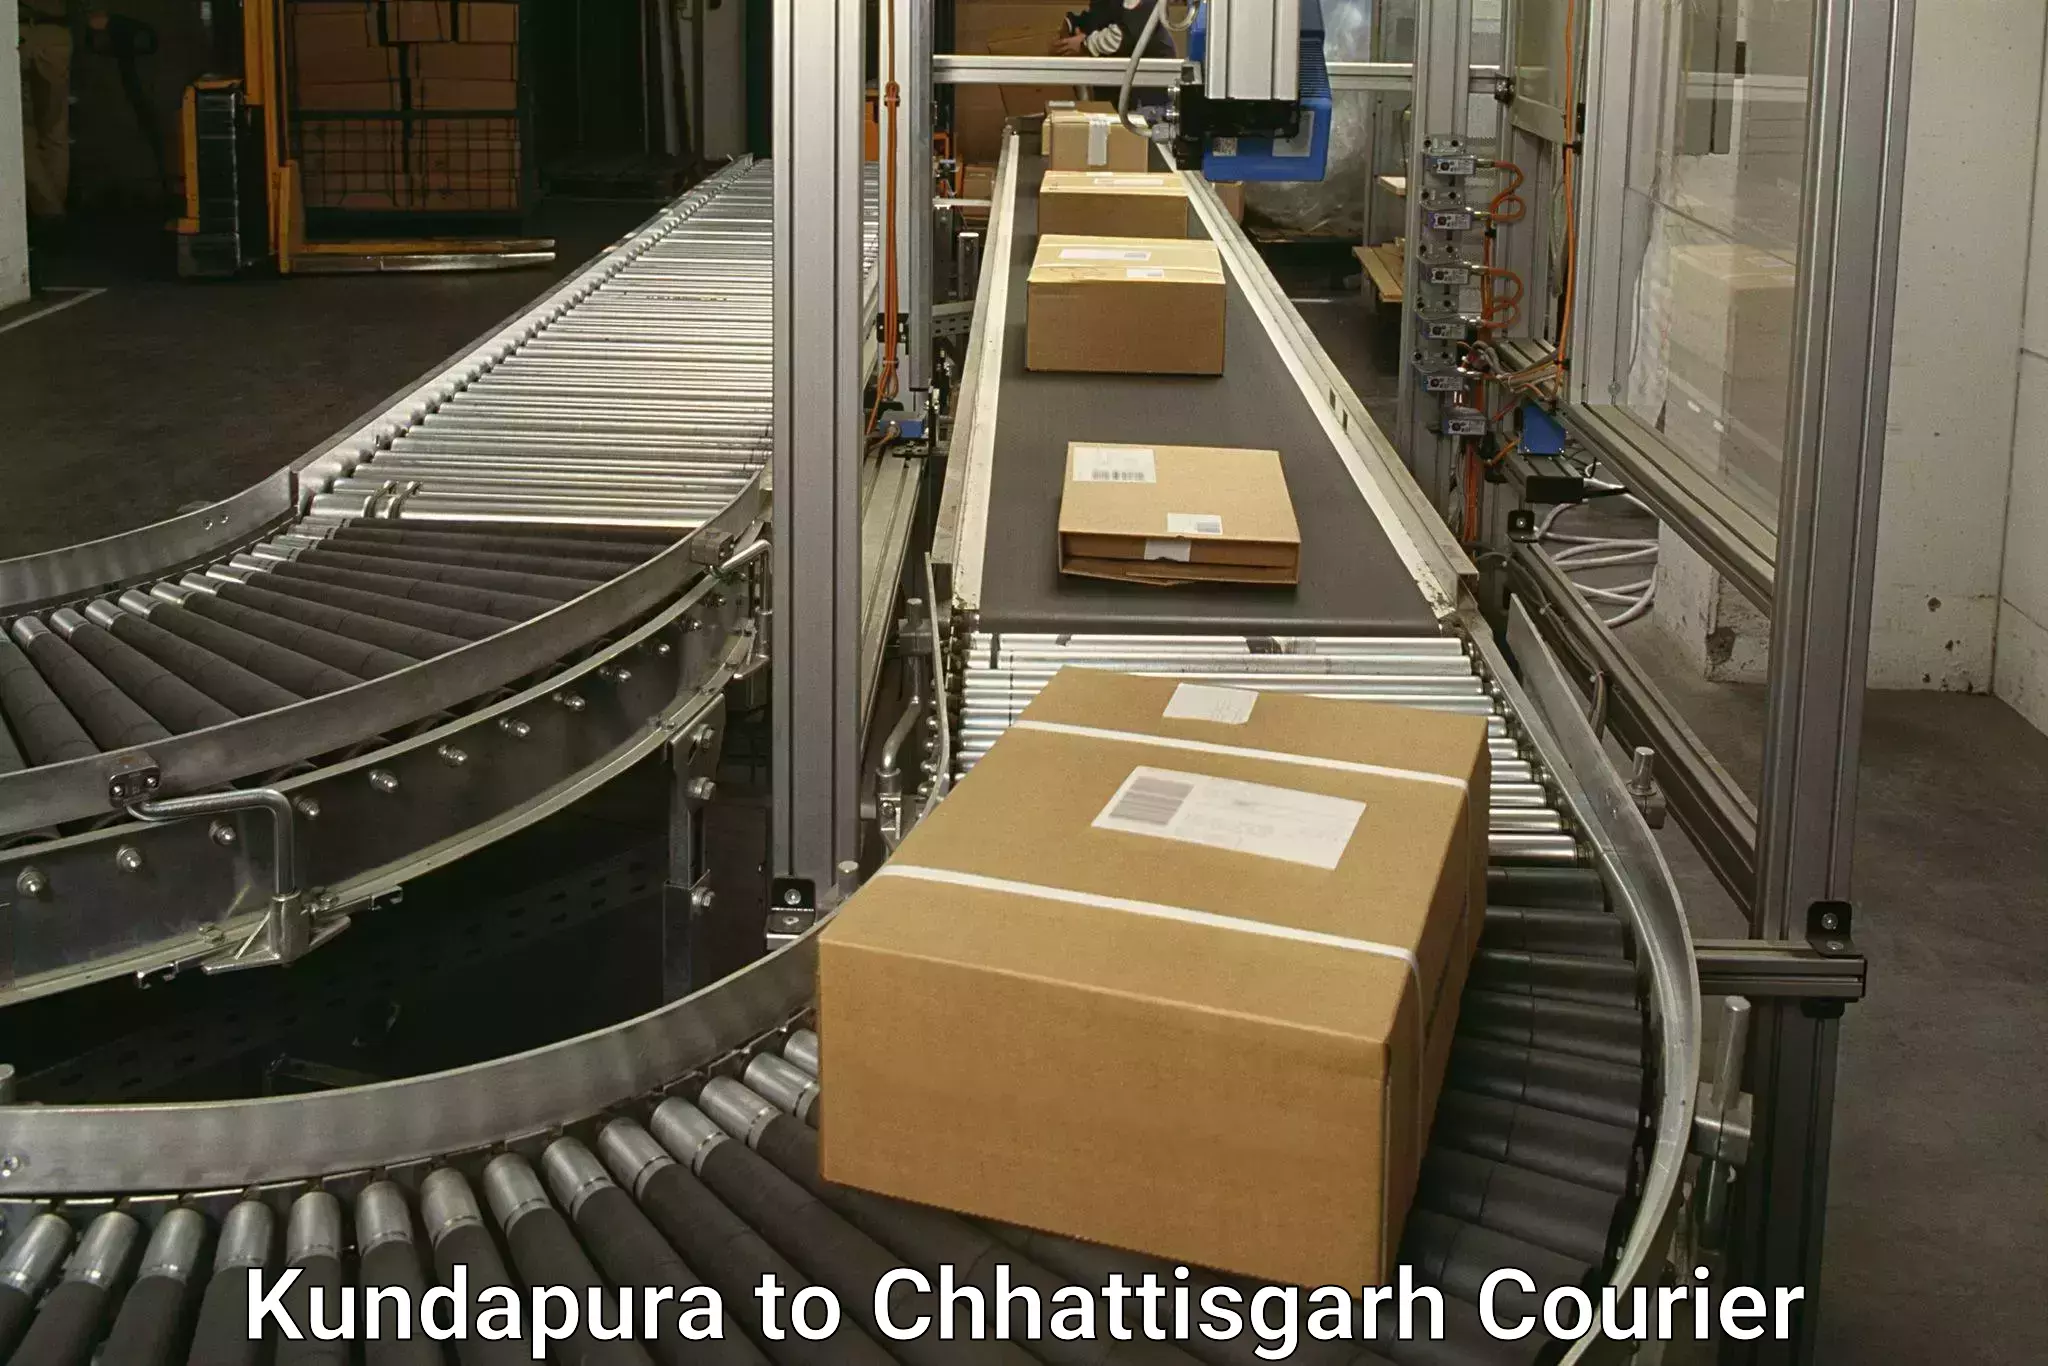 Express courier capabilities Kundapura to Chhattisgarh